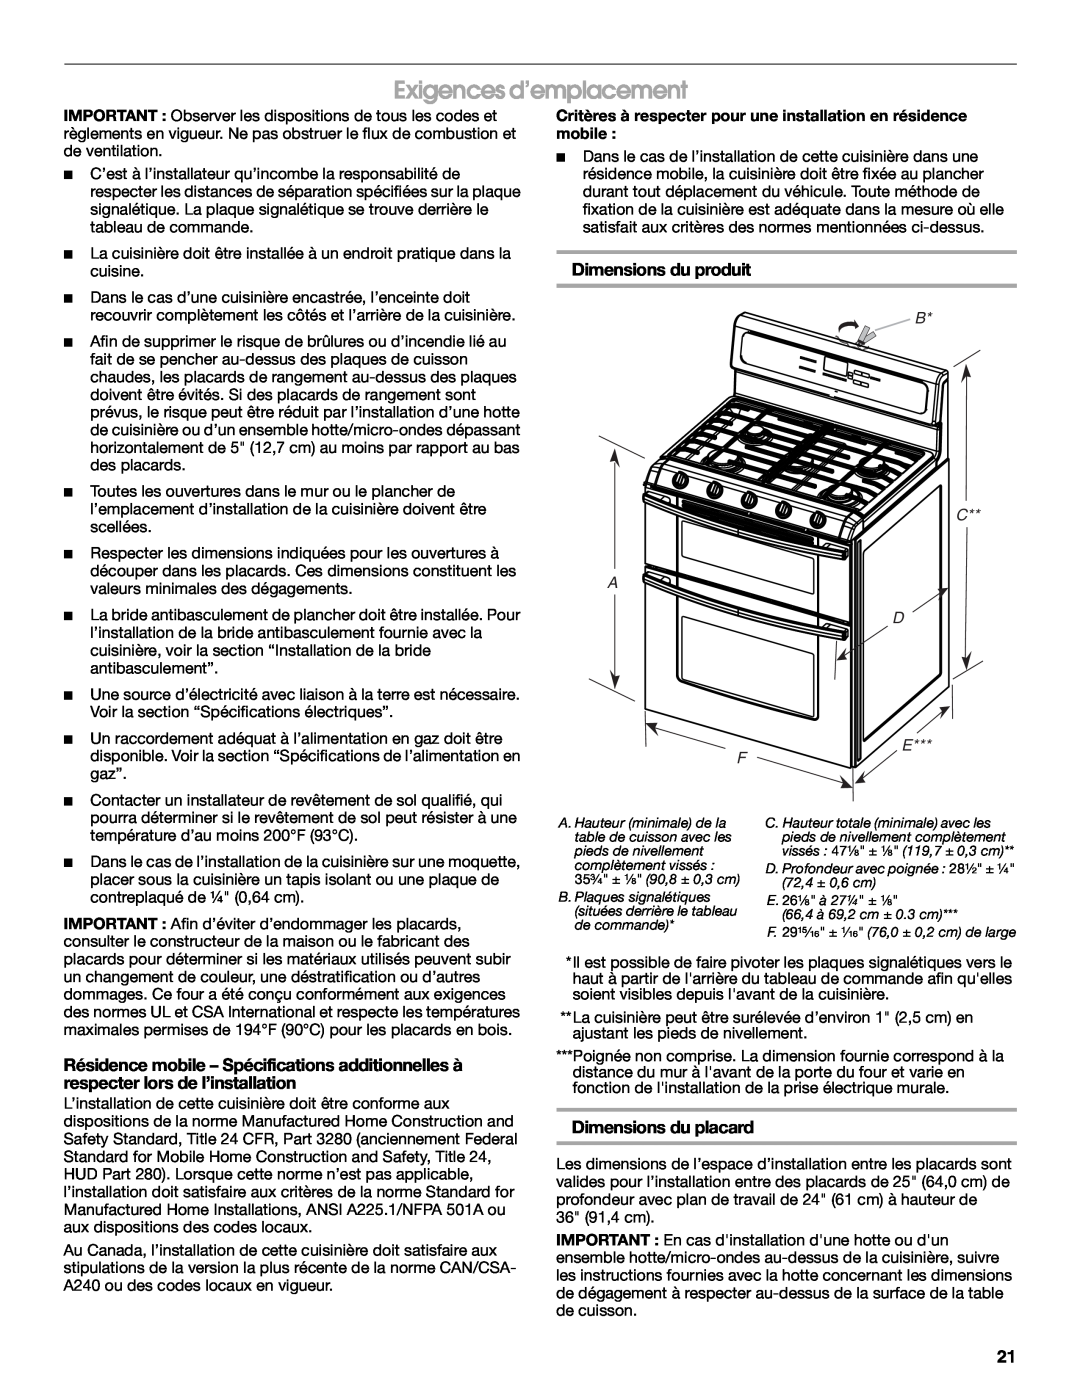 Whirlpool W10526071A installation instructions Exigences d’emplacement, Dimensions du produit, Dimensions du placard, B D E 